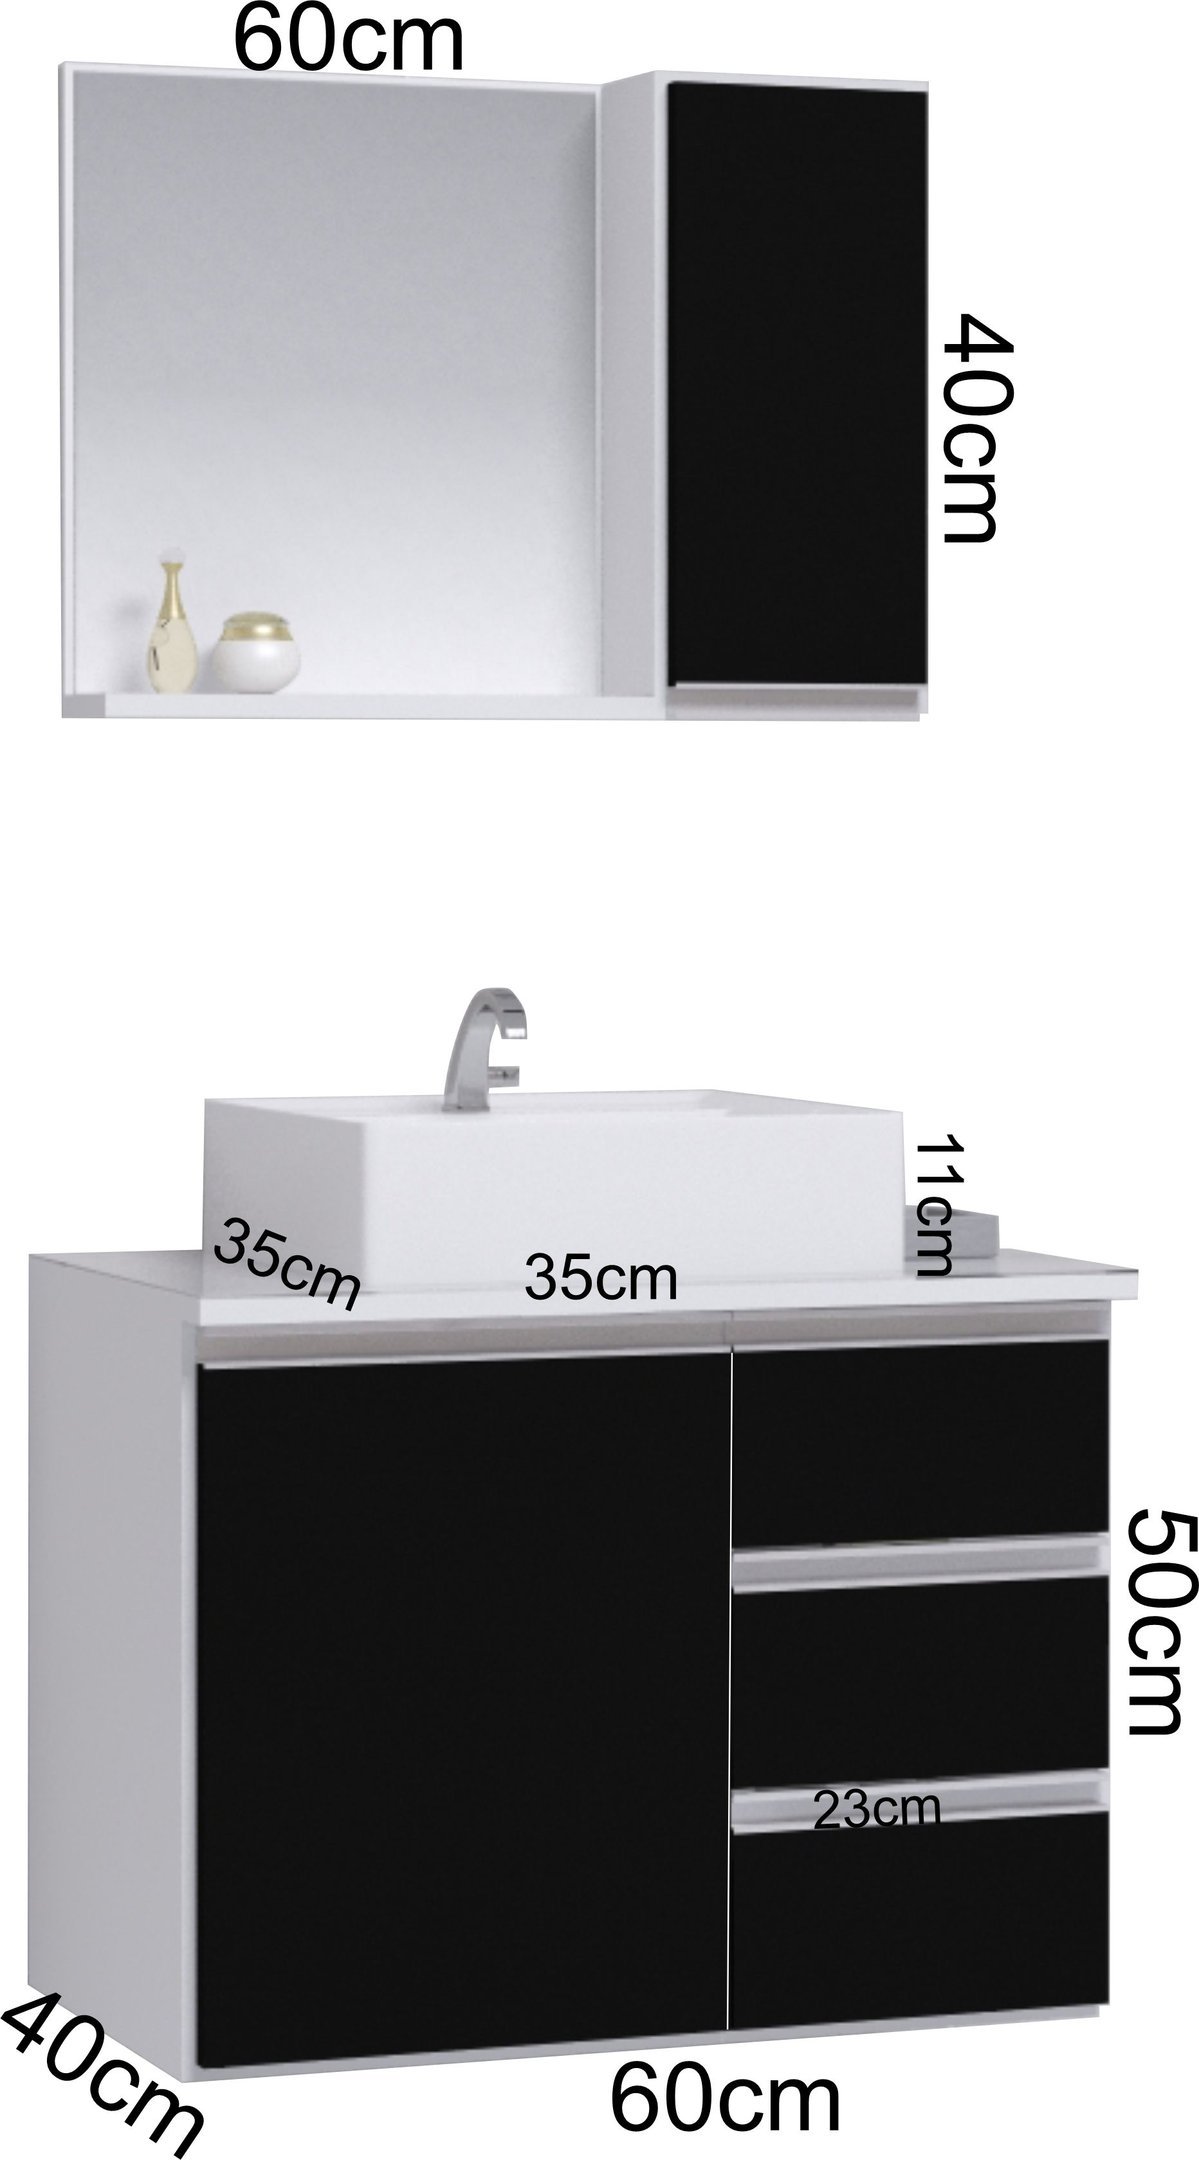 Conjunto Gabinete Banheiro Completo Prisma 60cm - Branco / Preto COM TAMPO VIDRO - 3